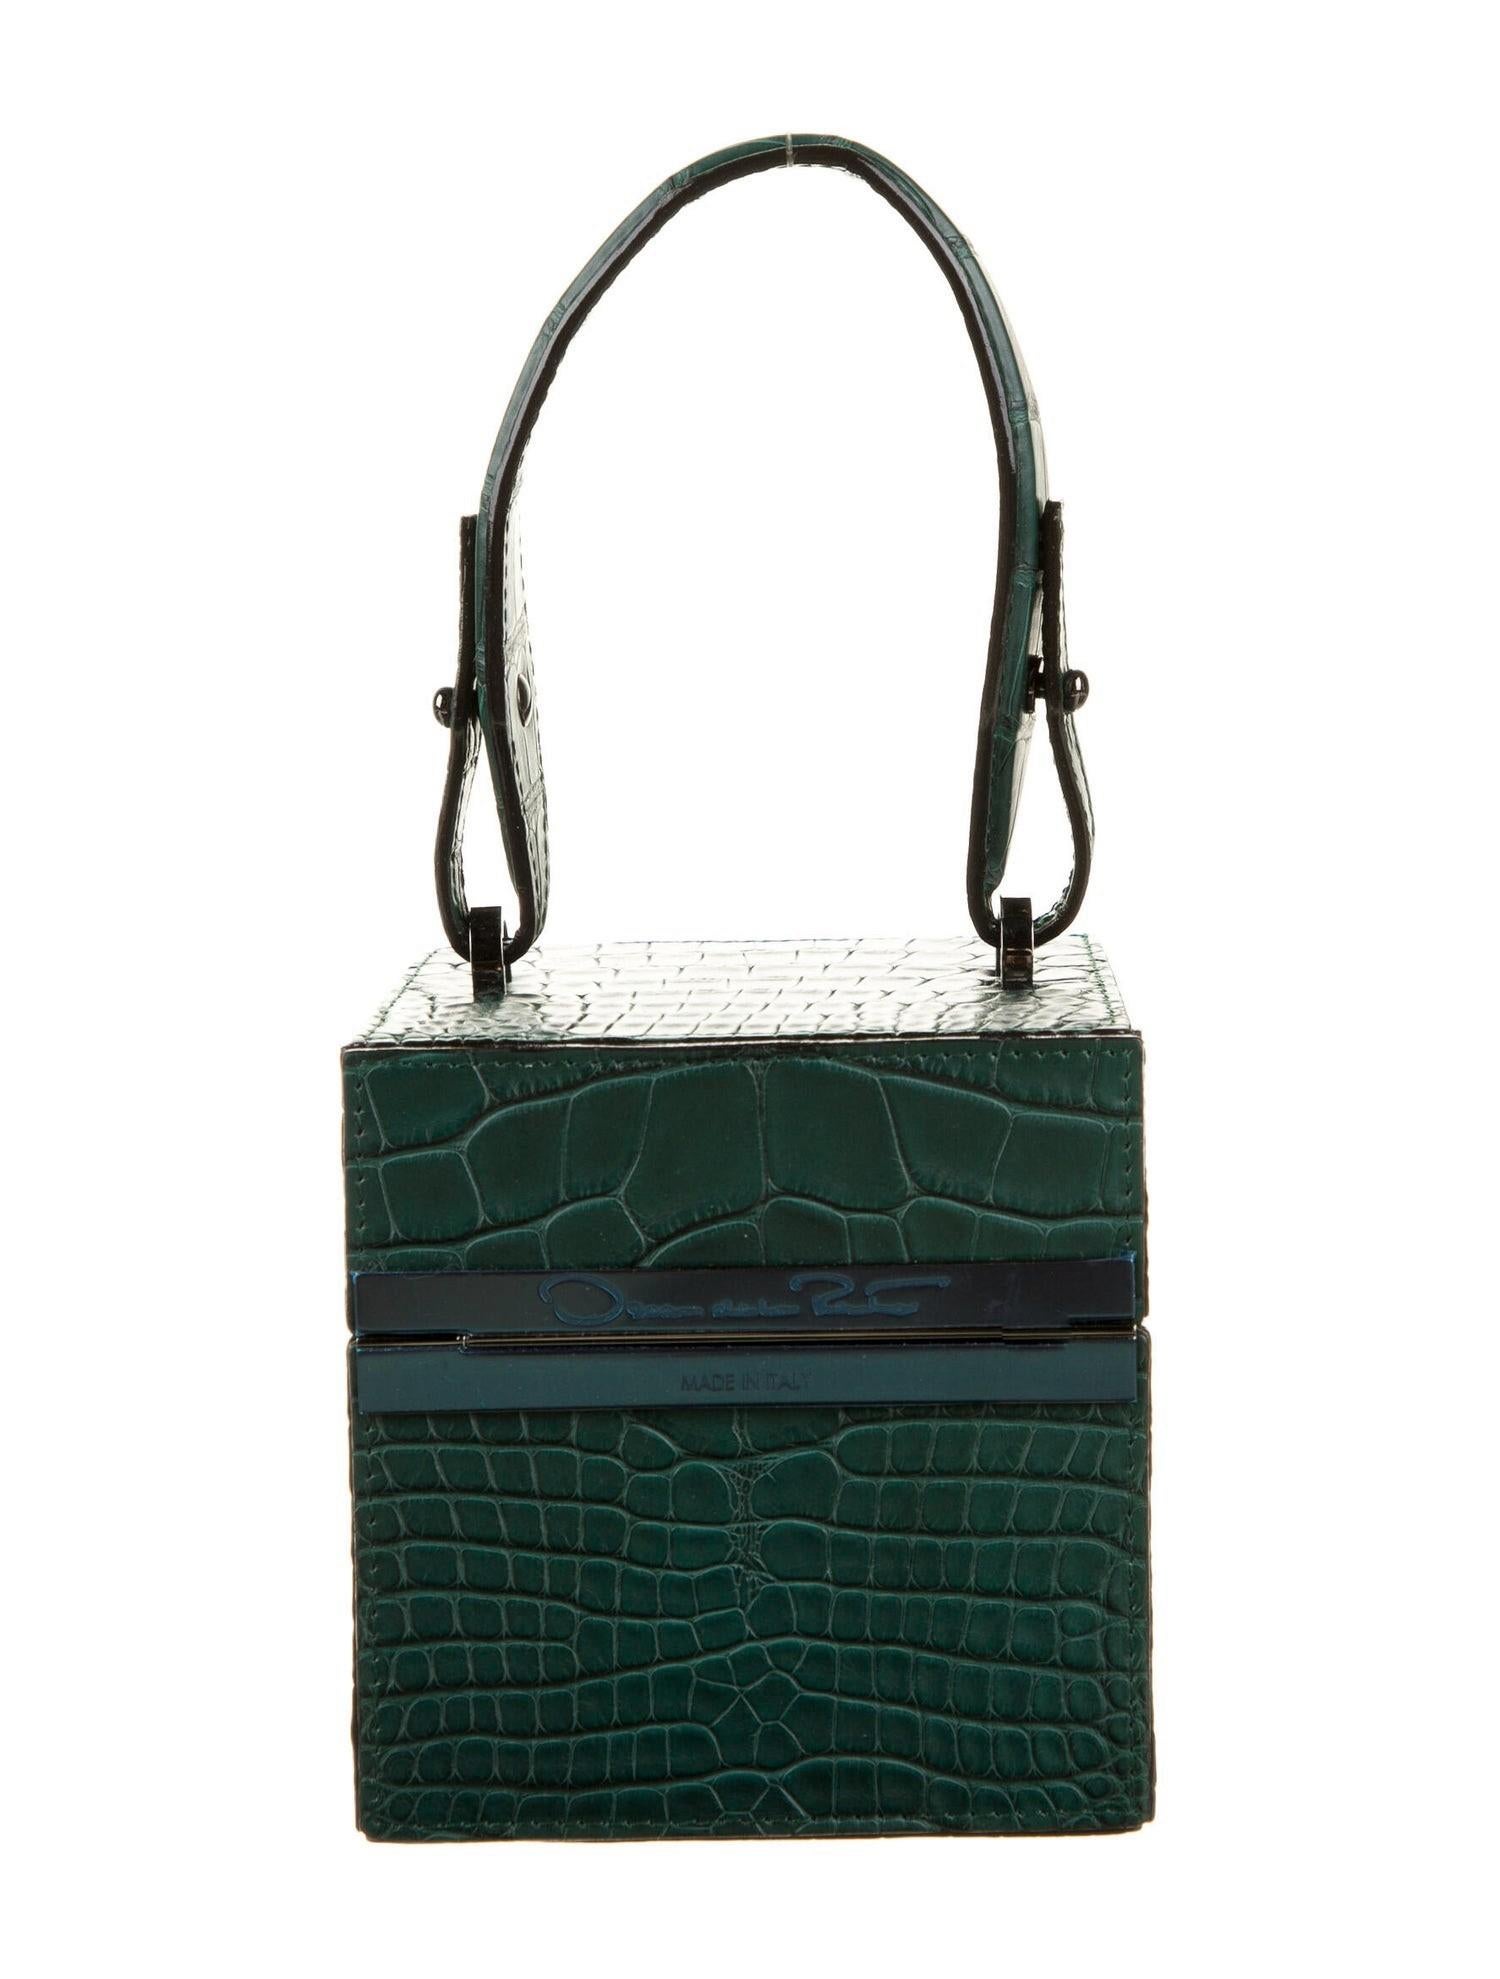 New $9690 Oscar De La Renta Green Alligator Alibi Bag W/ Box and Tags ...